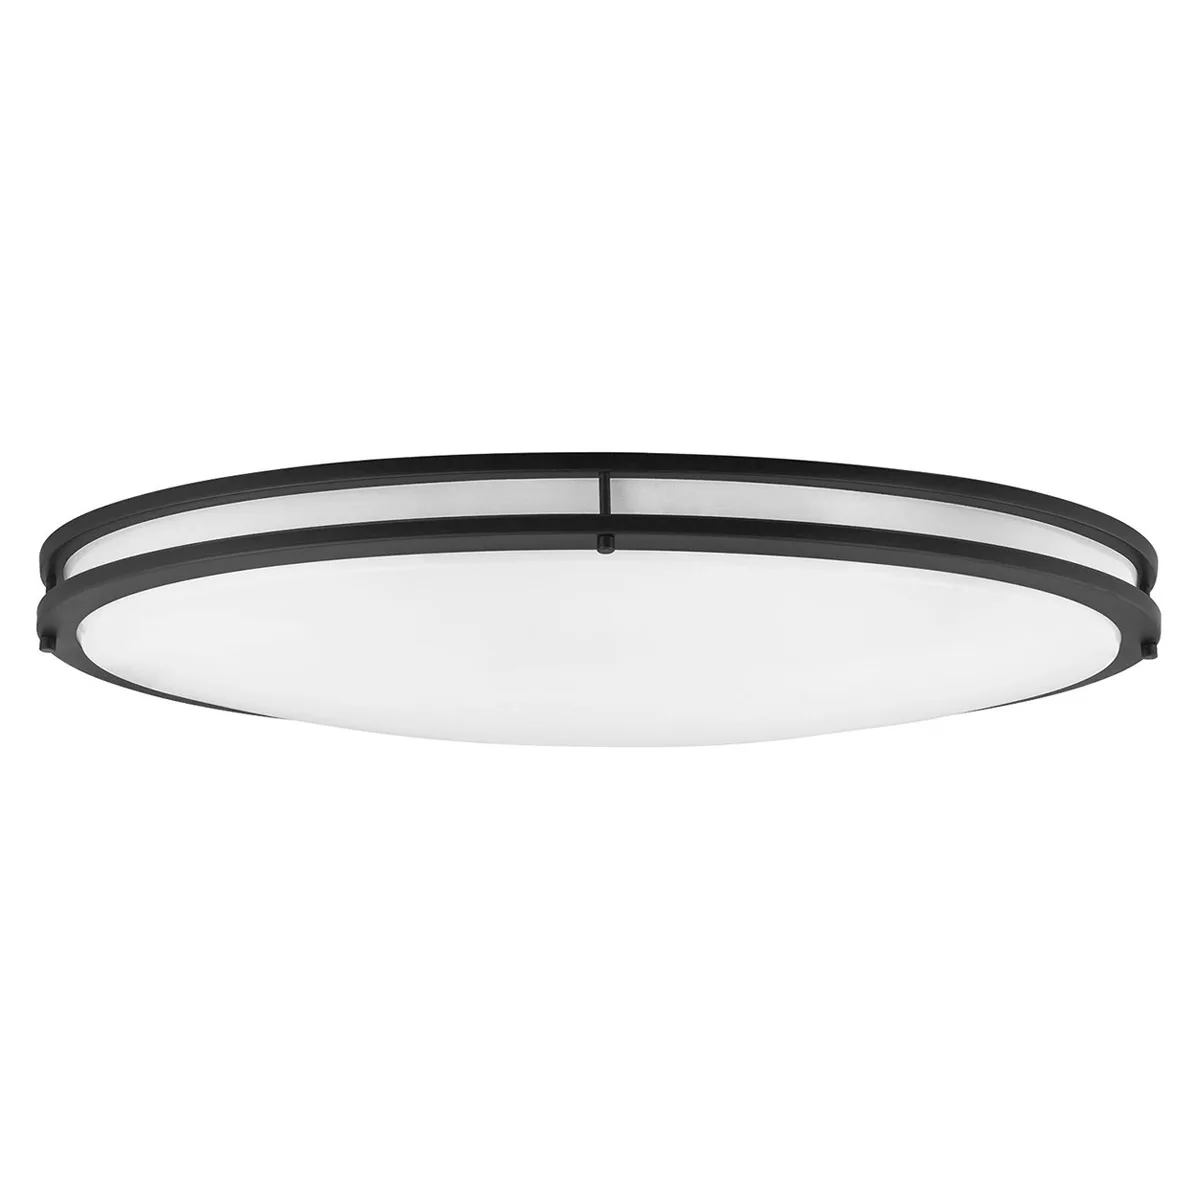 40 Watt, Sunlite LED 32-Inch Oval Flush Mount Ceiling Light Fixture, 40K - Cool White, Dimmable, 3200 Lumens,  Black